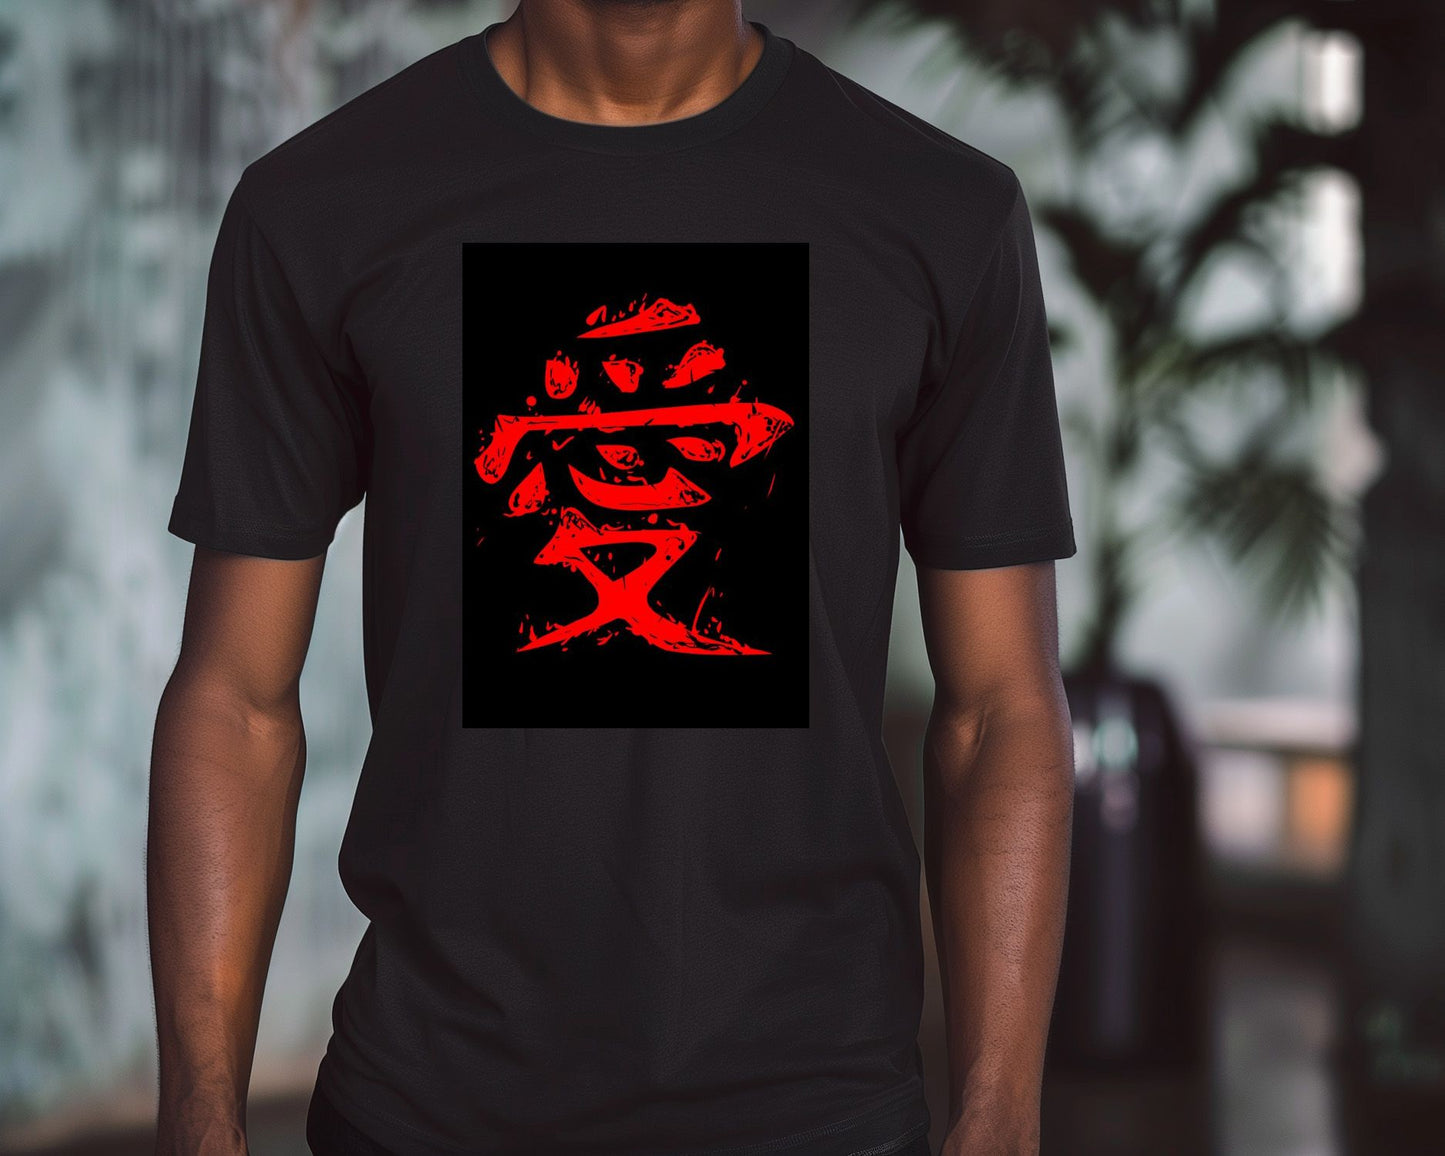 gaara kanji logo - @AMARMARUF